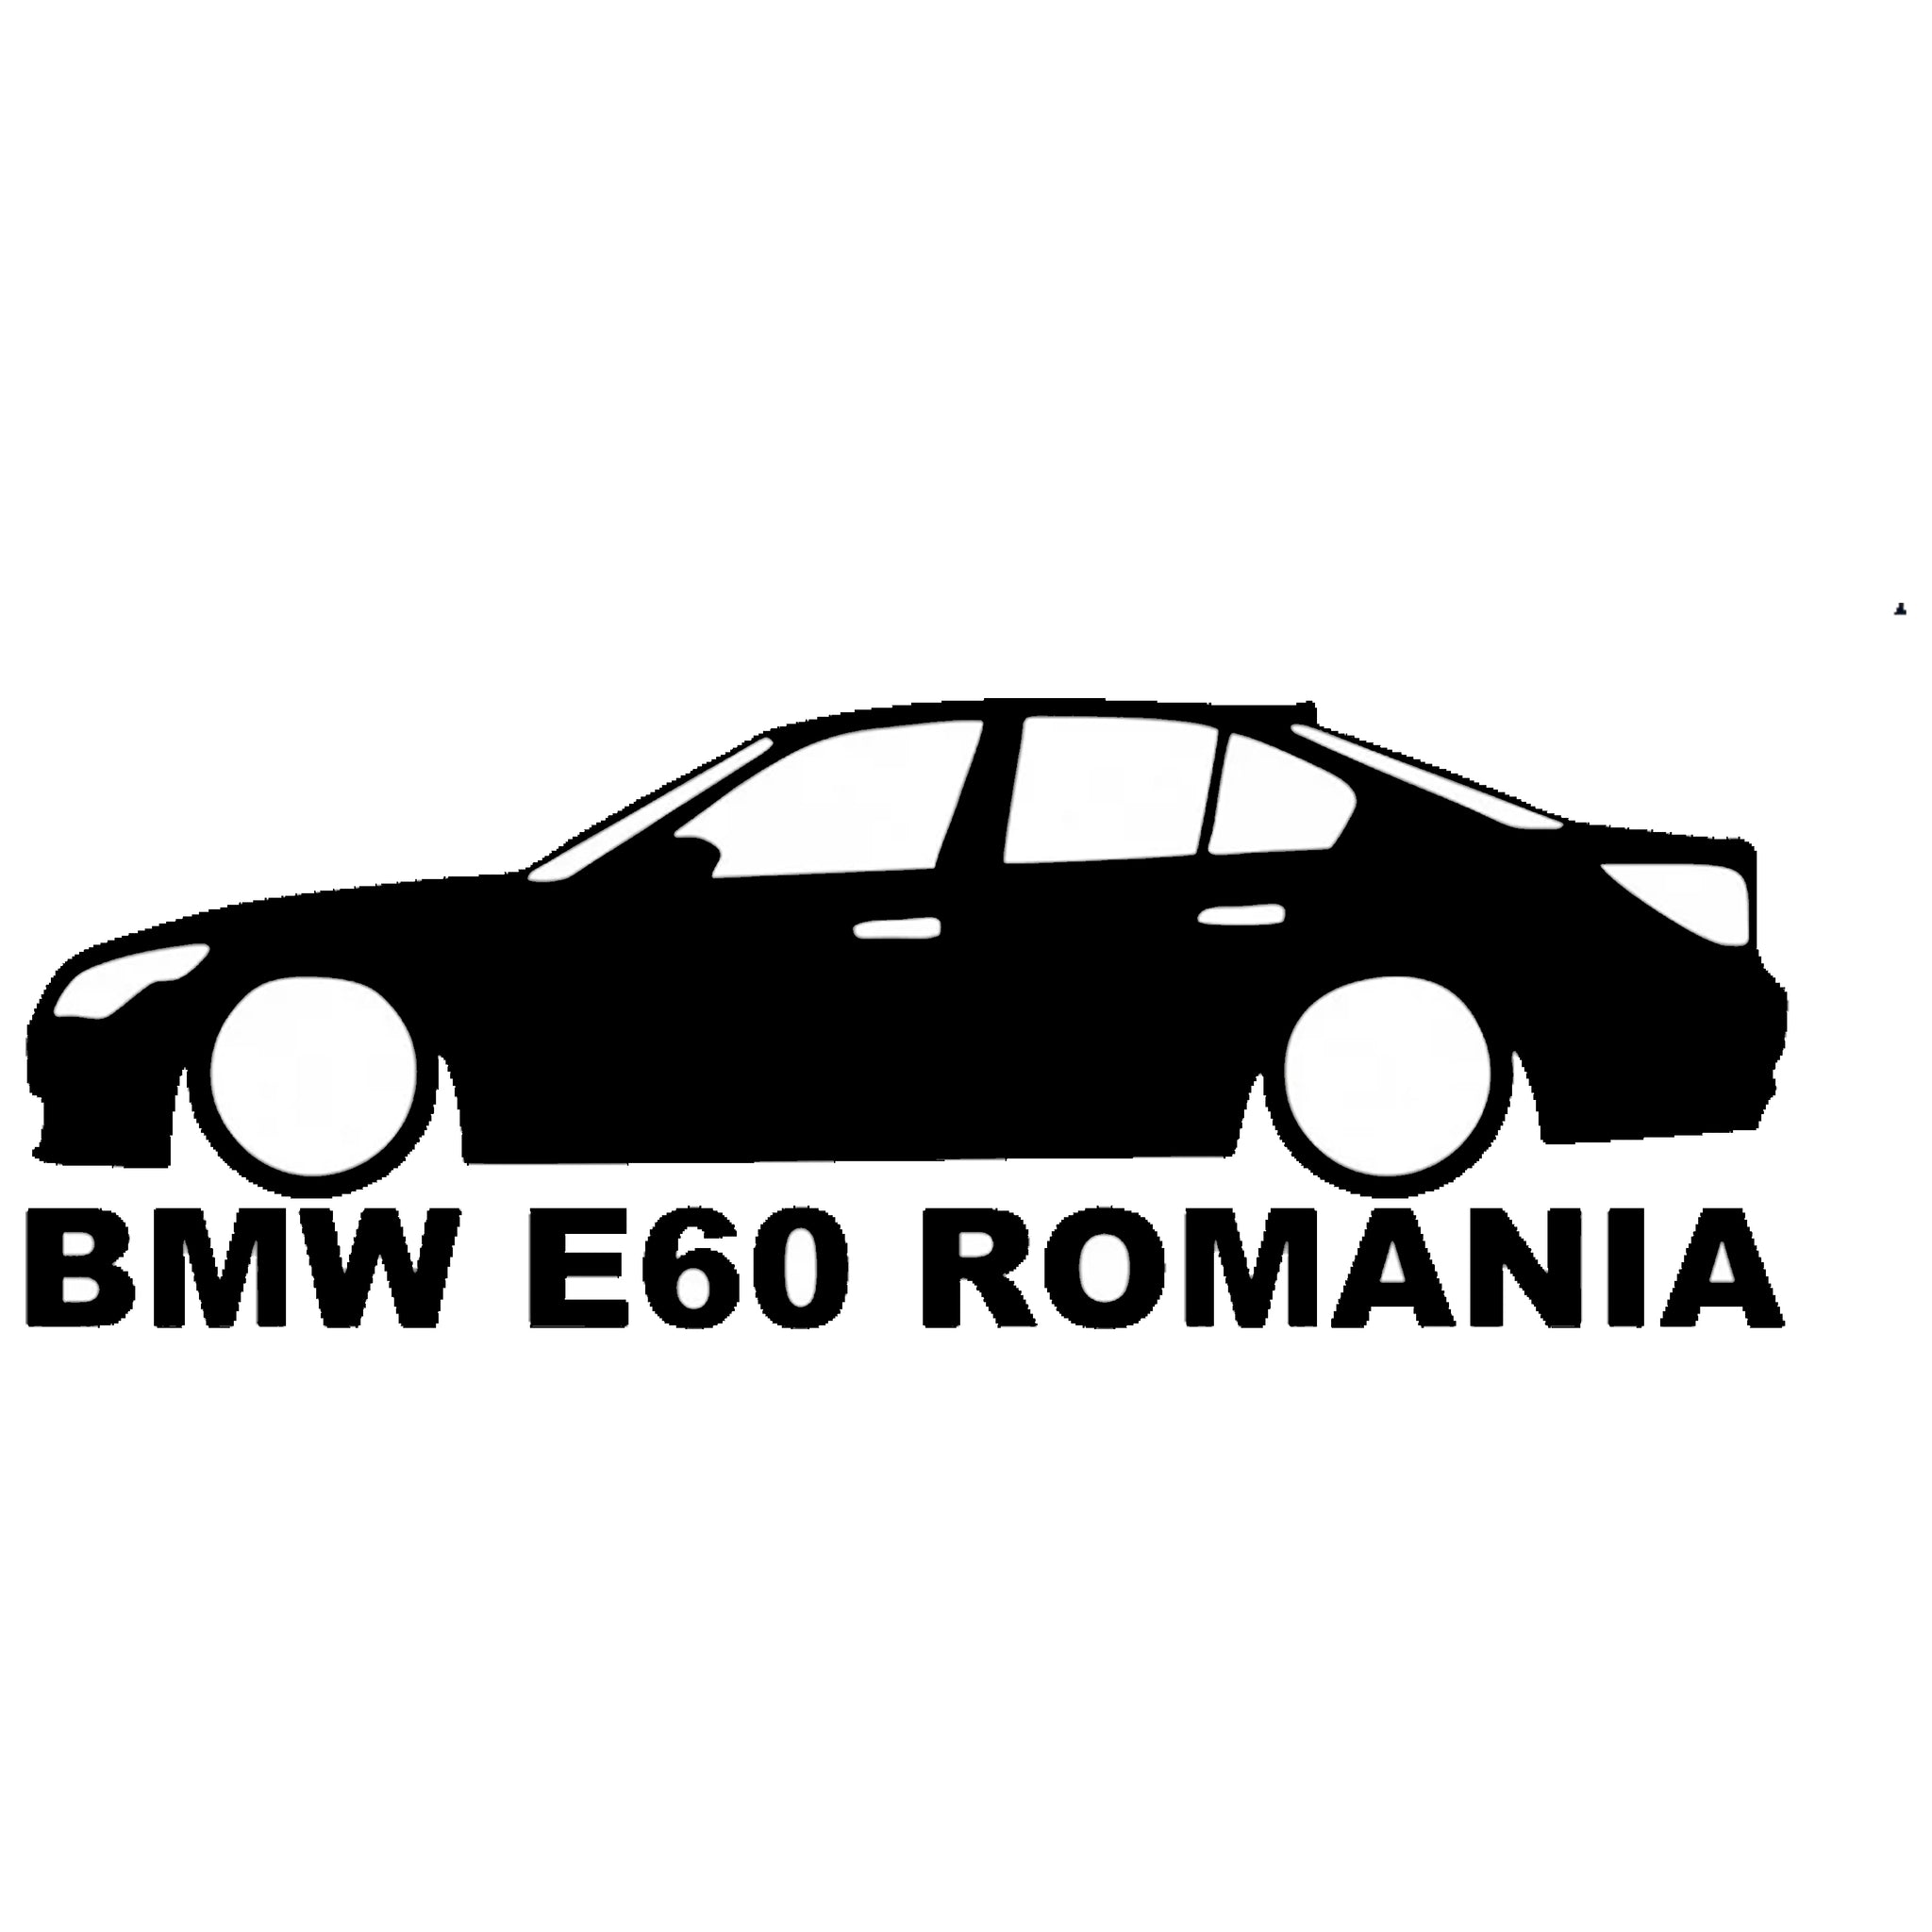 Sticker BMW E60 Romania